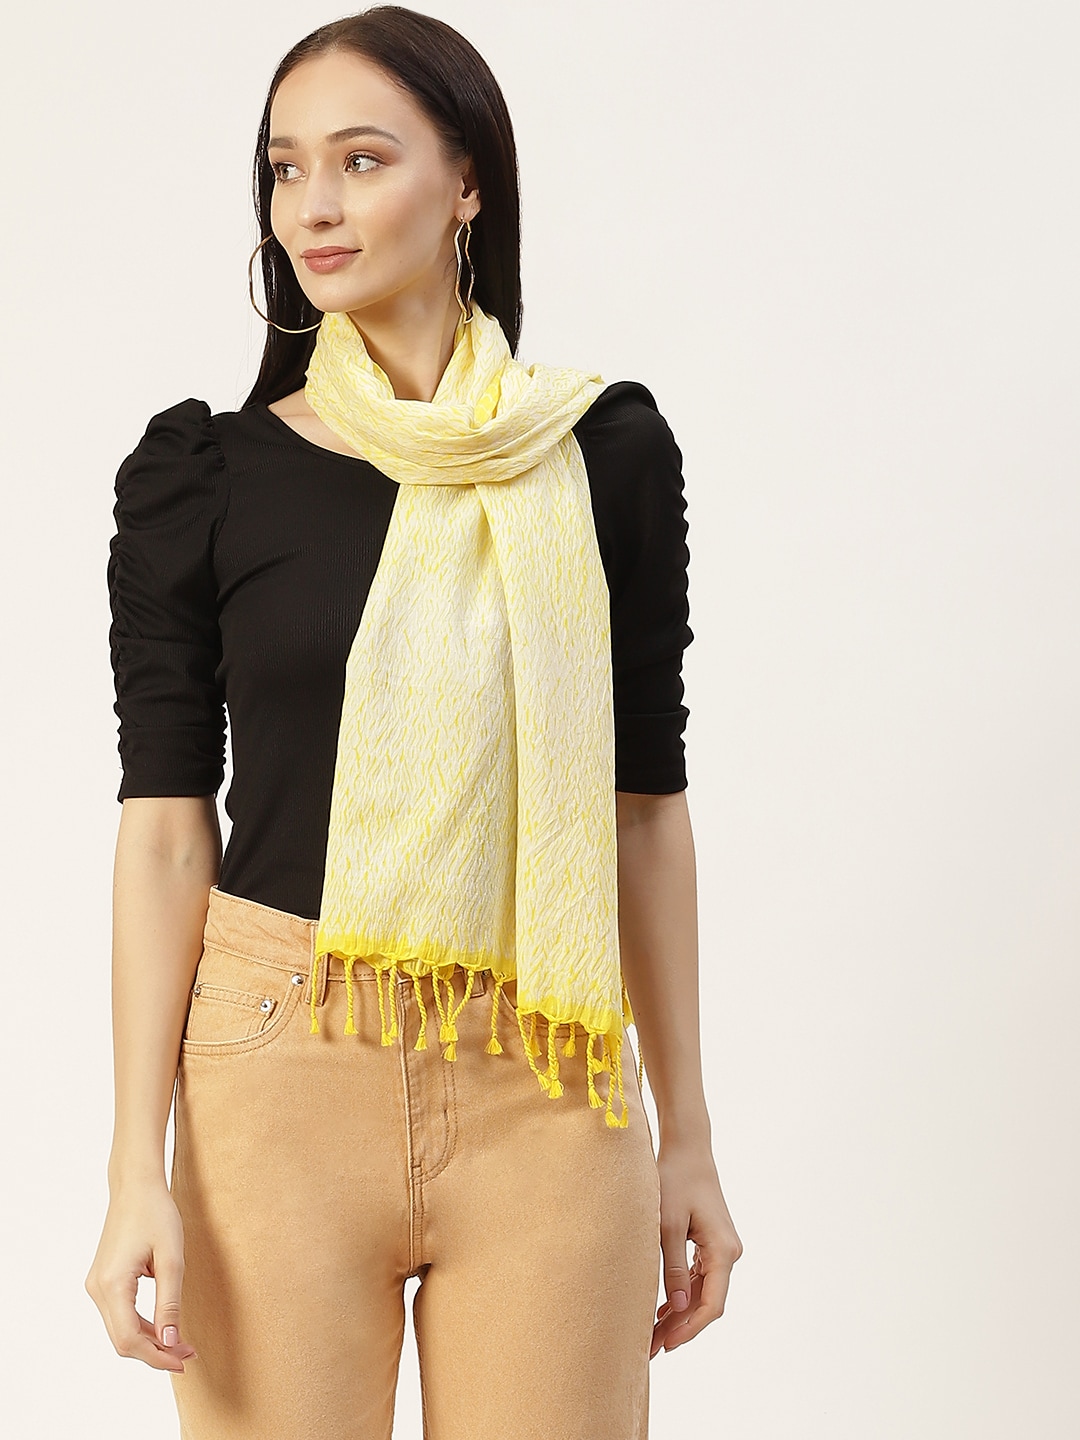 ArtEastri Women Yellow & Cream-Coloured Woven Shibori Cotton Stole Price in India